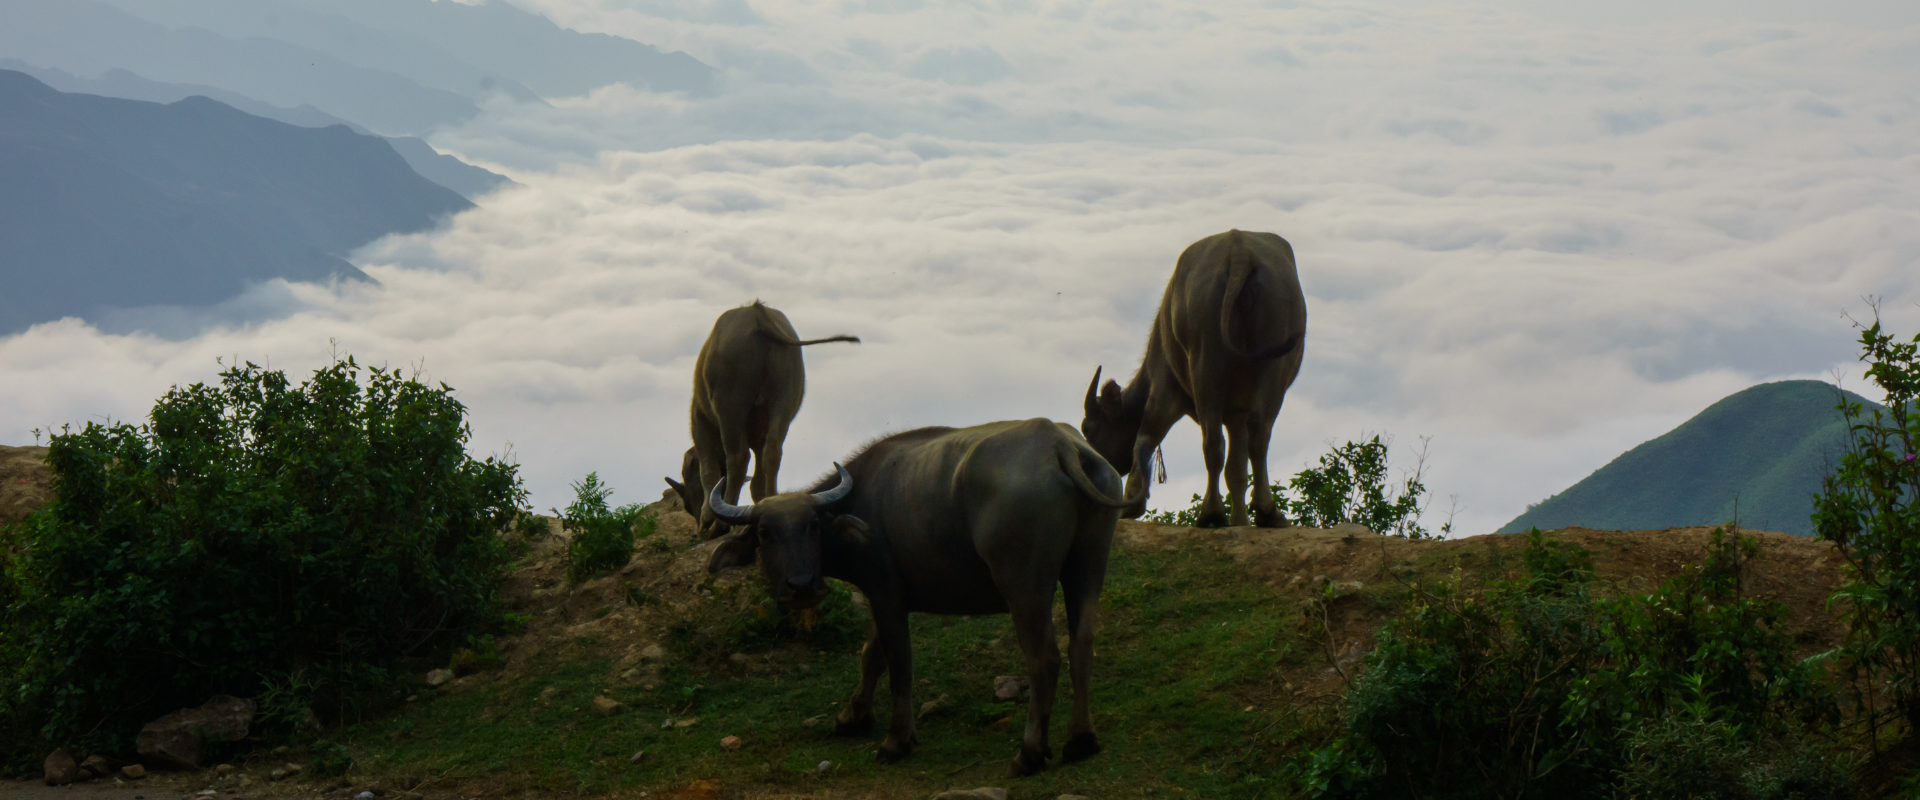 buffalo and mountain cloud